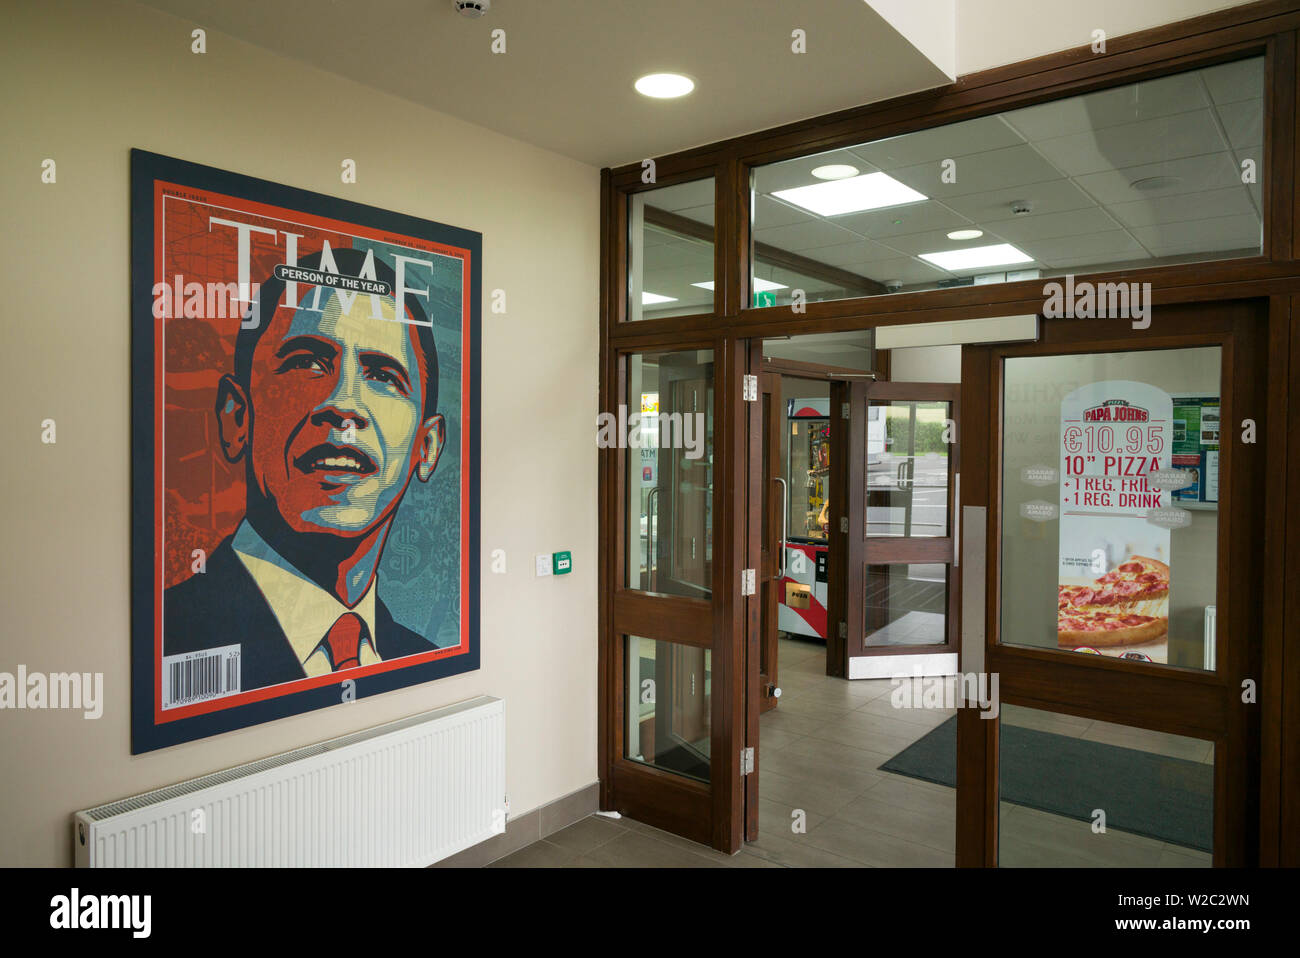 Ireland, County Offaly, Moneygall, motorway plaza named for US President Barack Obama, Barack Obama Plaza, Obama visit museum, Time magazine cover art Stock Photo